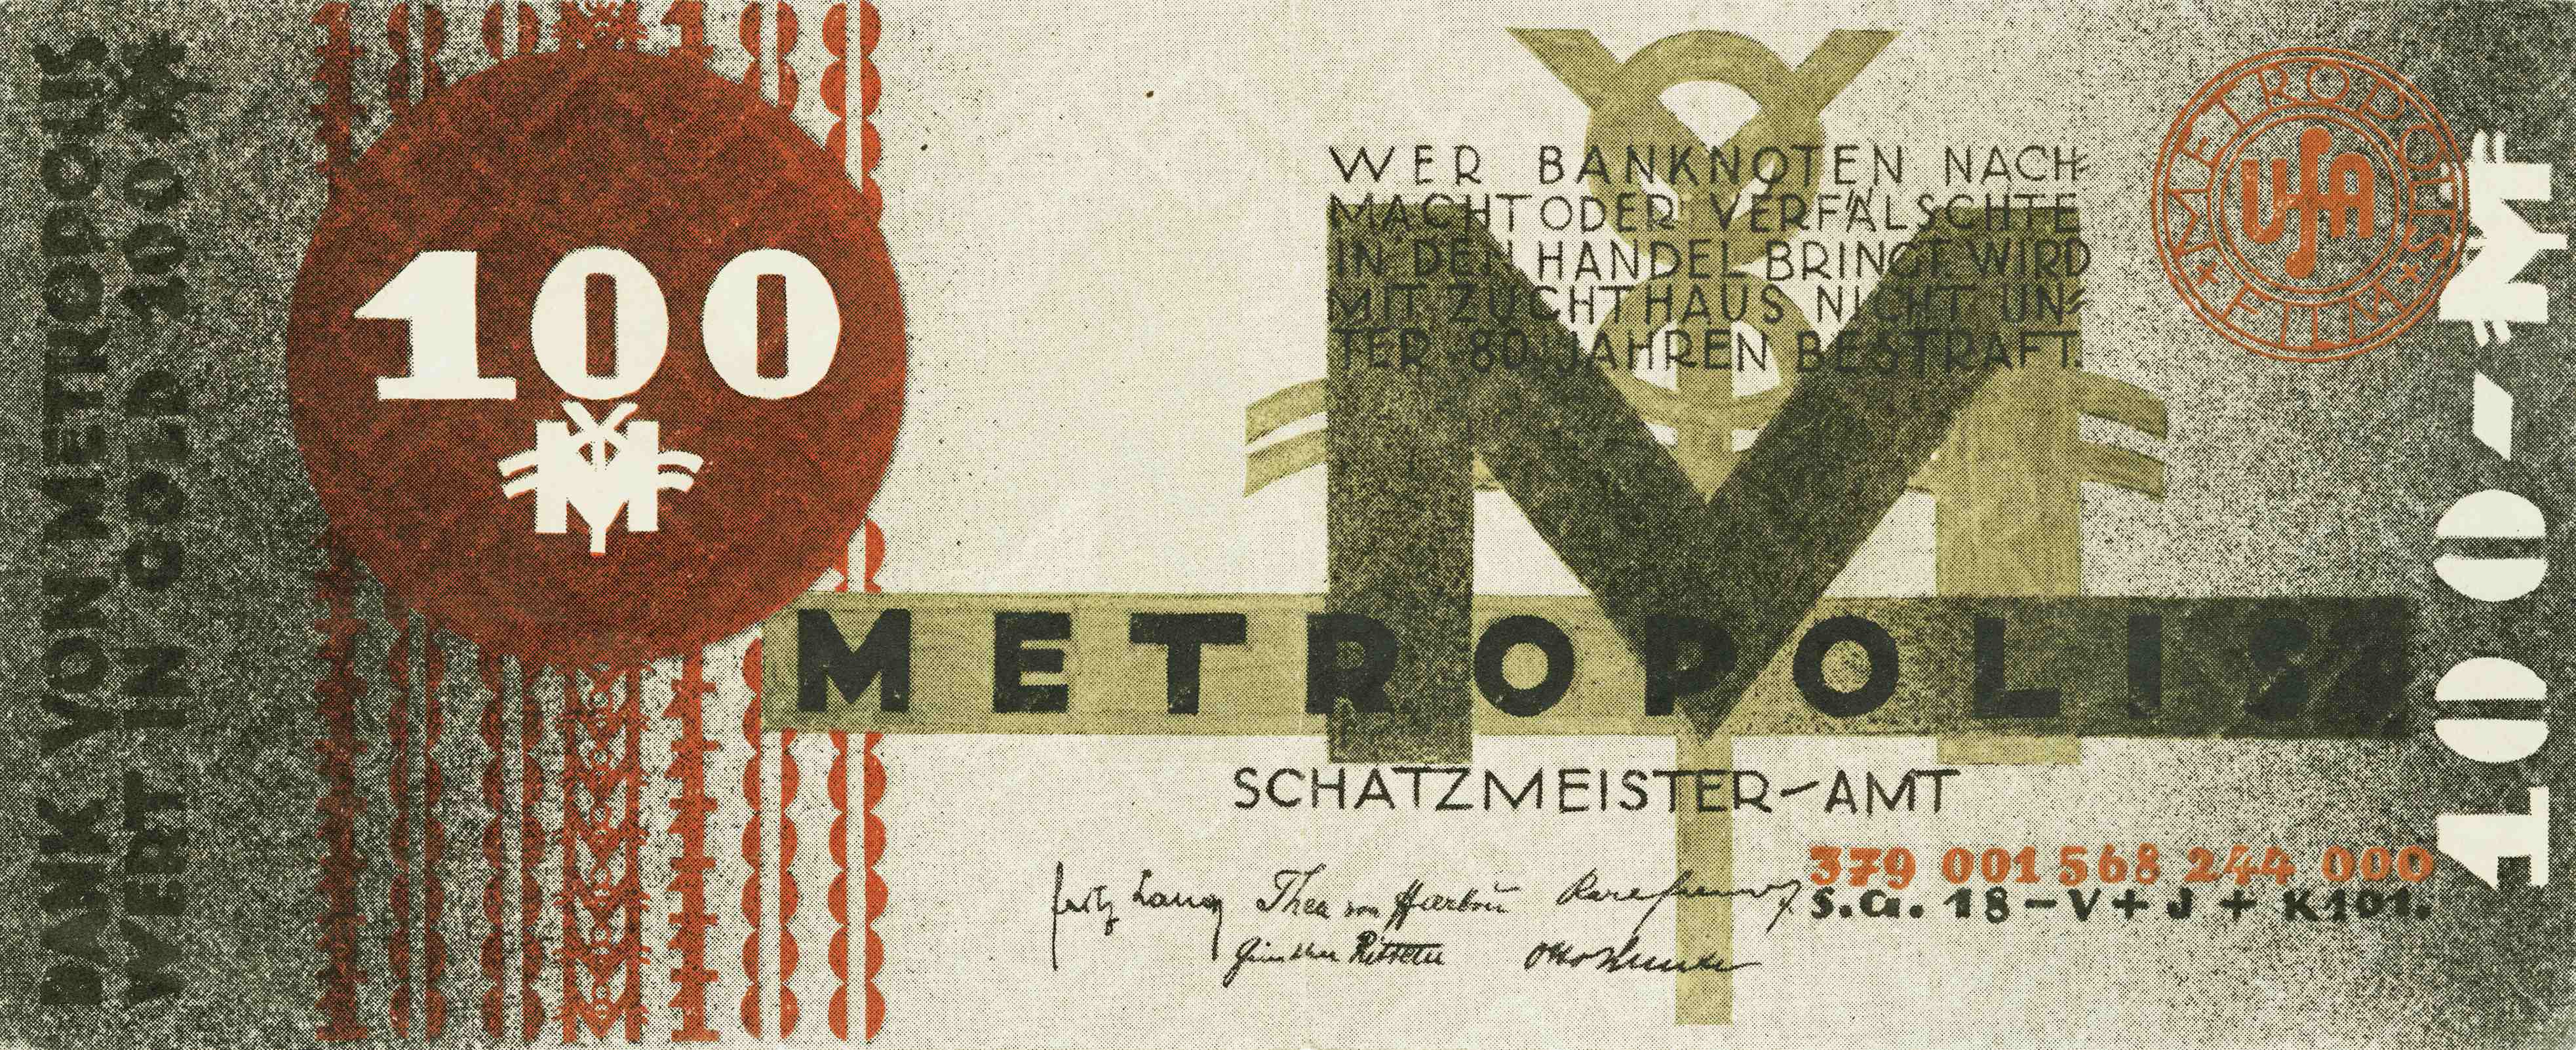 Reklamegeldschein aus dem Film Metropolis